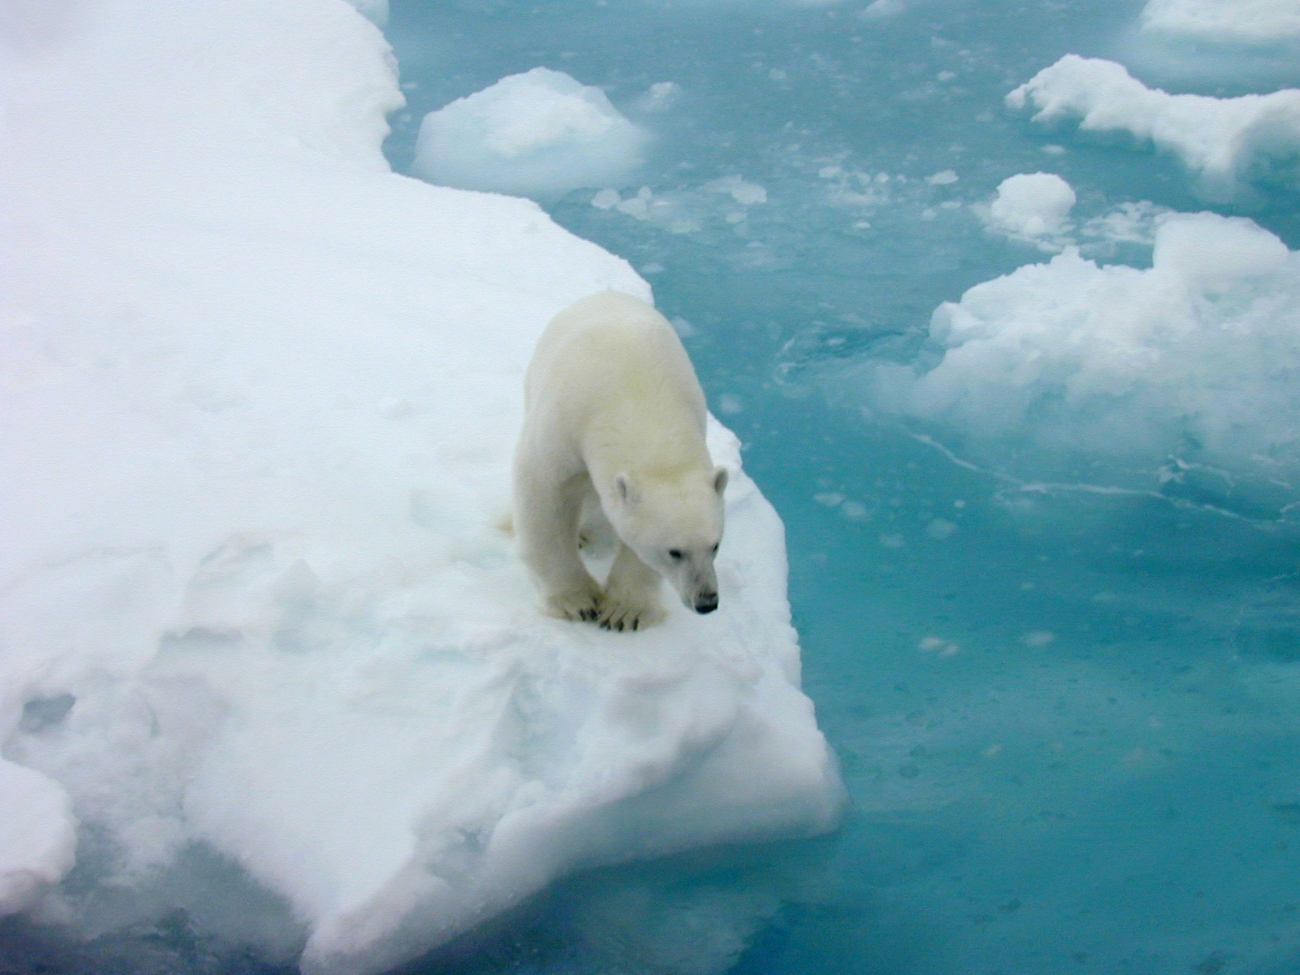 Polar bear (Ursus maritimus) on ice floe